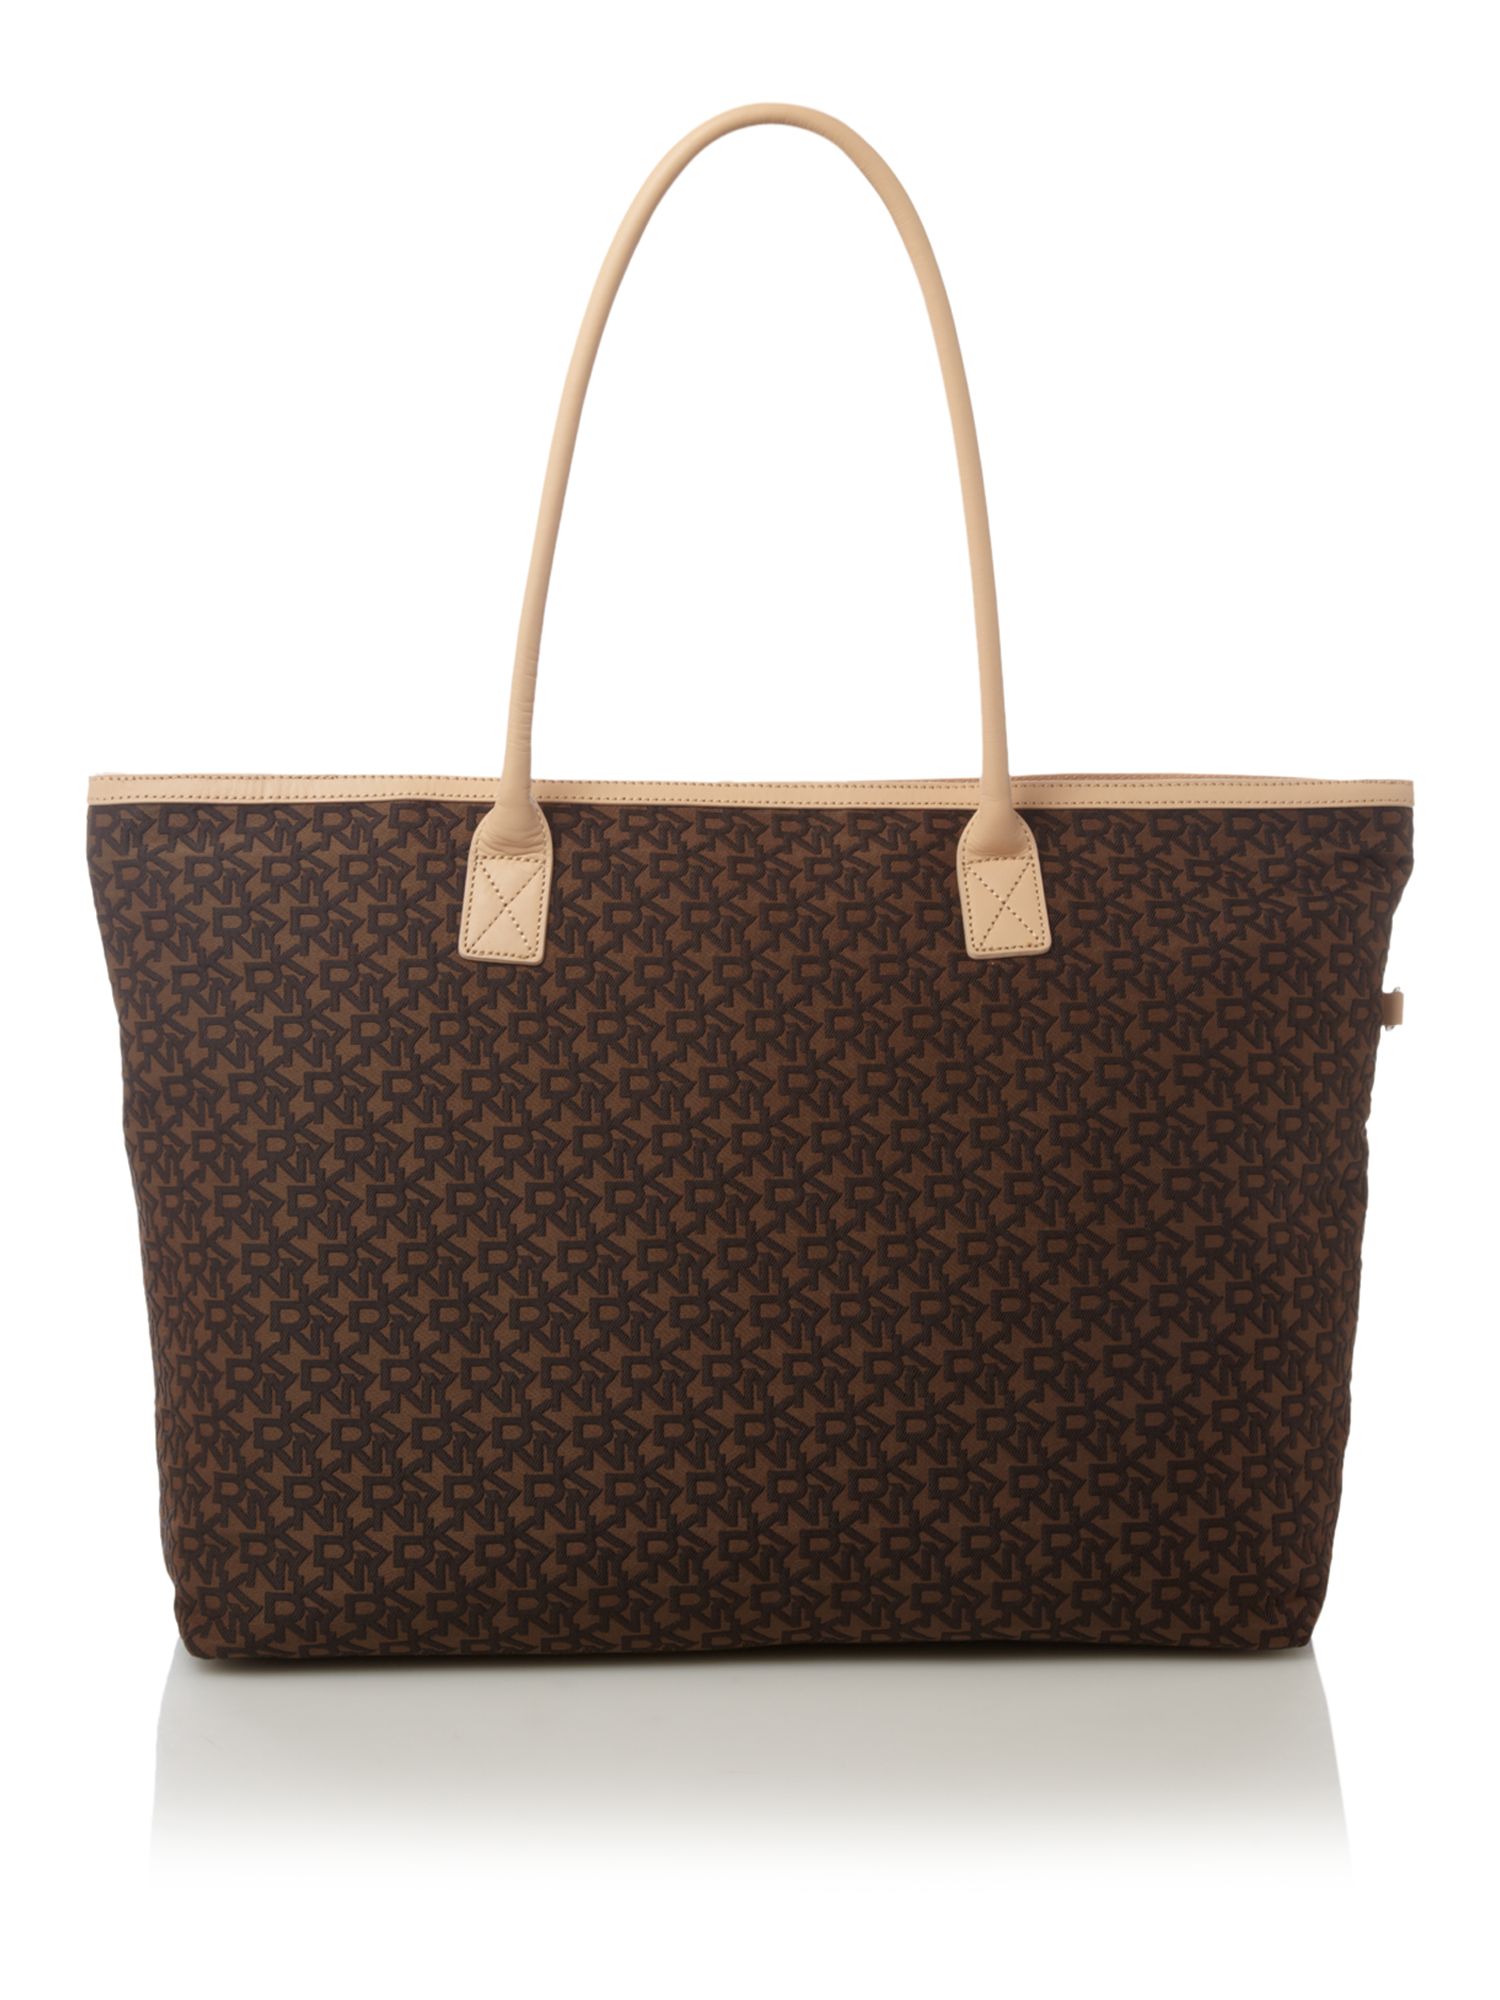 Dkny Luggage Large Zip Top Tote Bag in Brown | Lyst